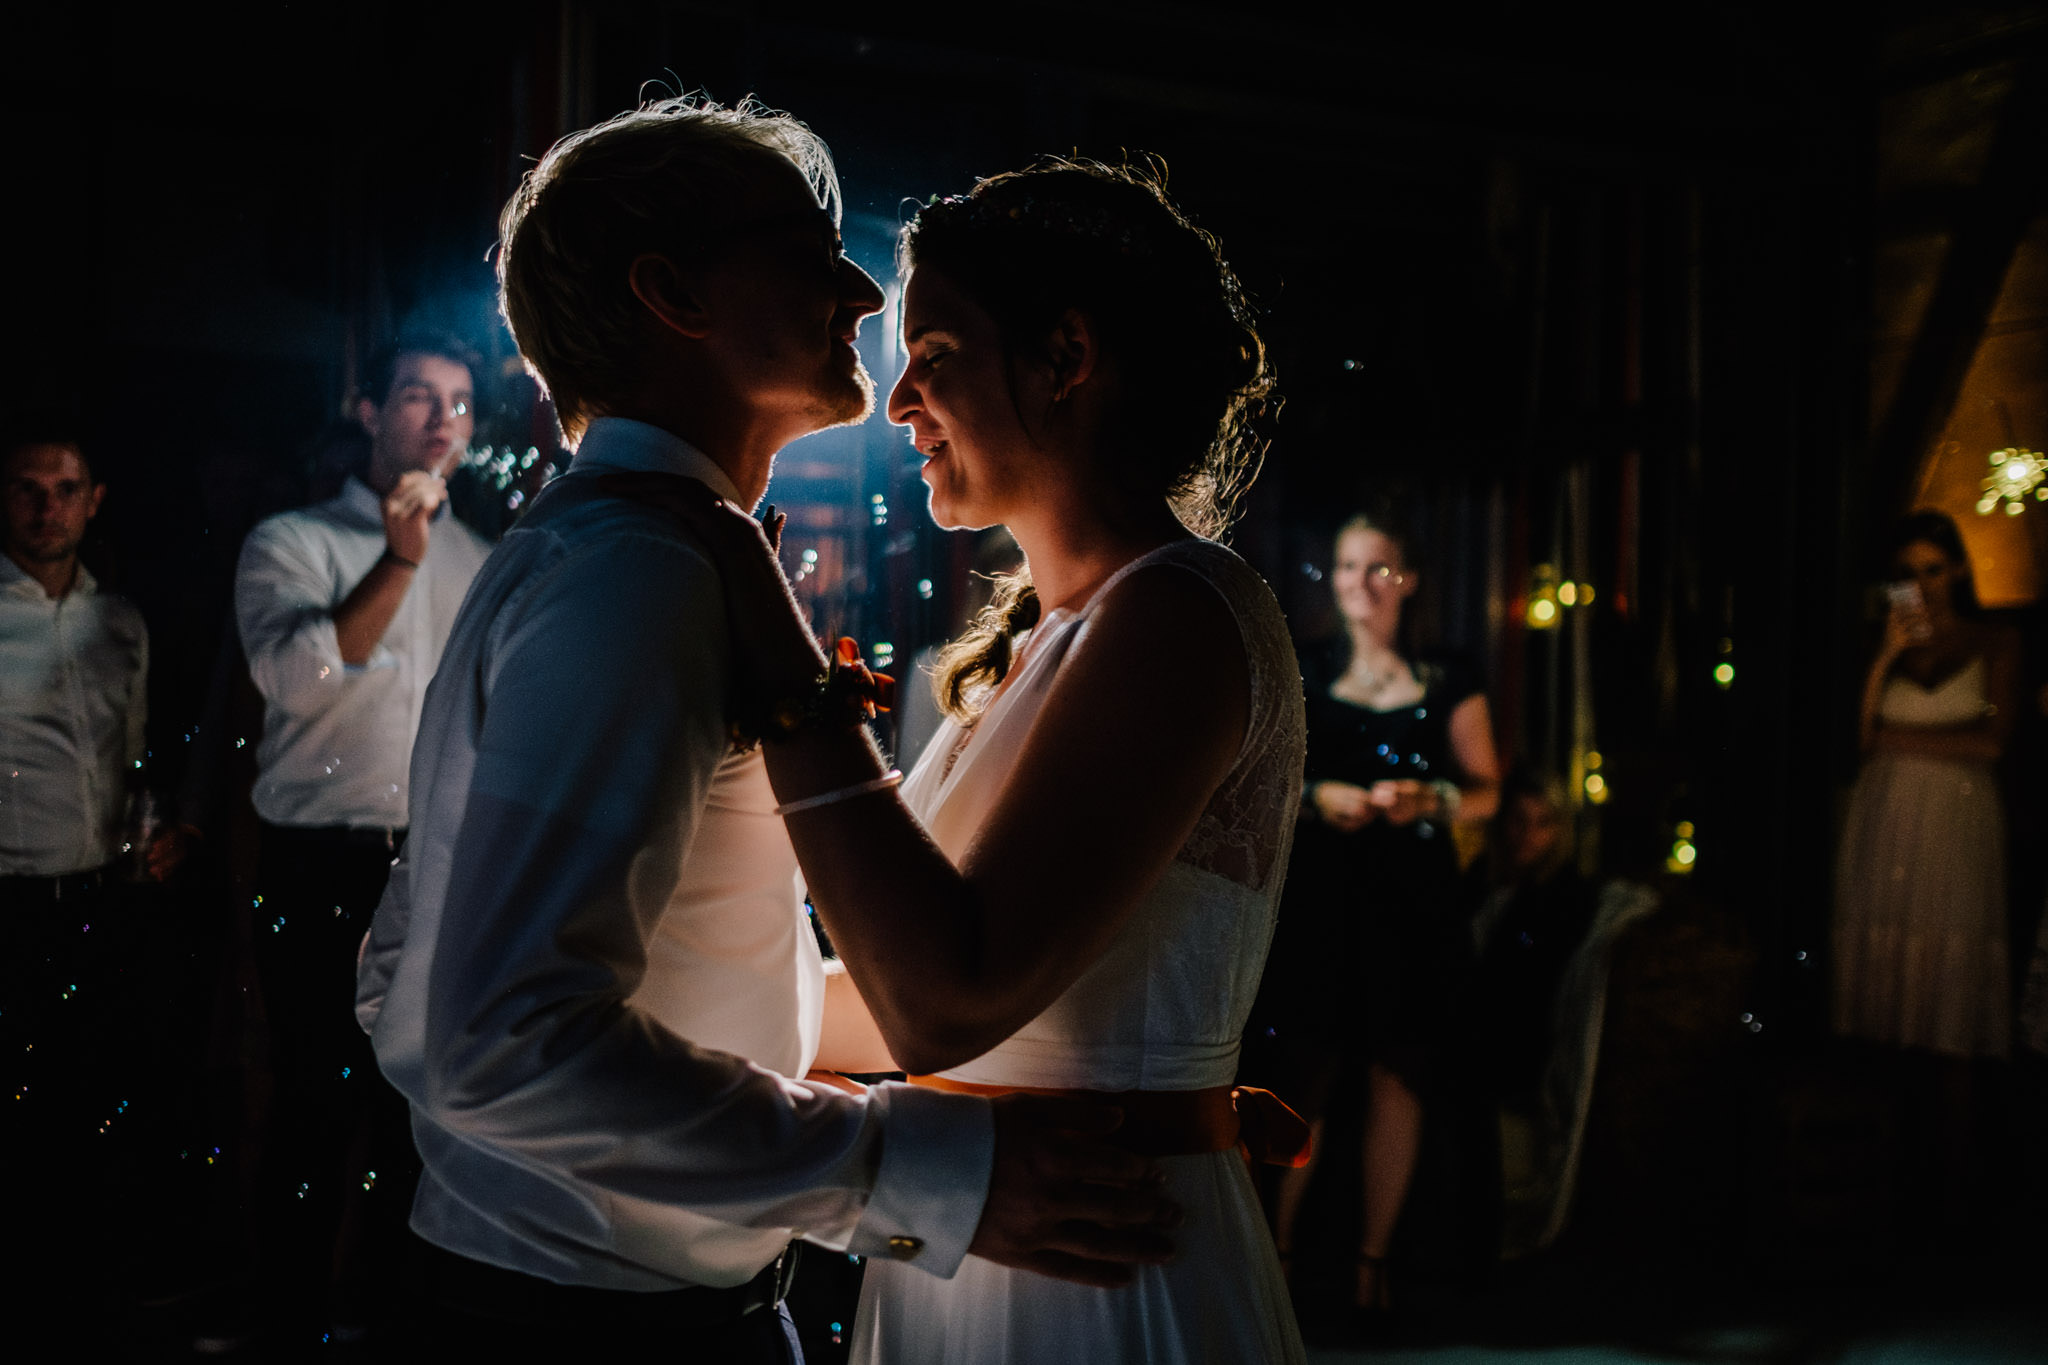 Hochzeitsfoto: Erster Tanz im Gegenlicht - Hochzeitsfotograf aus Köln im Saarland unterwegs